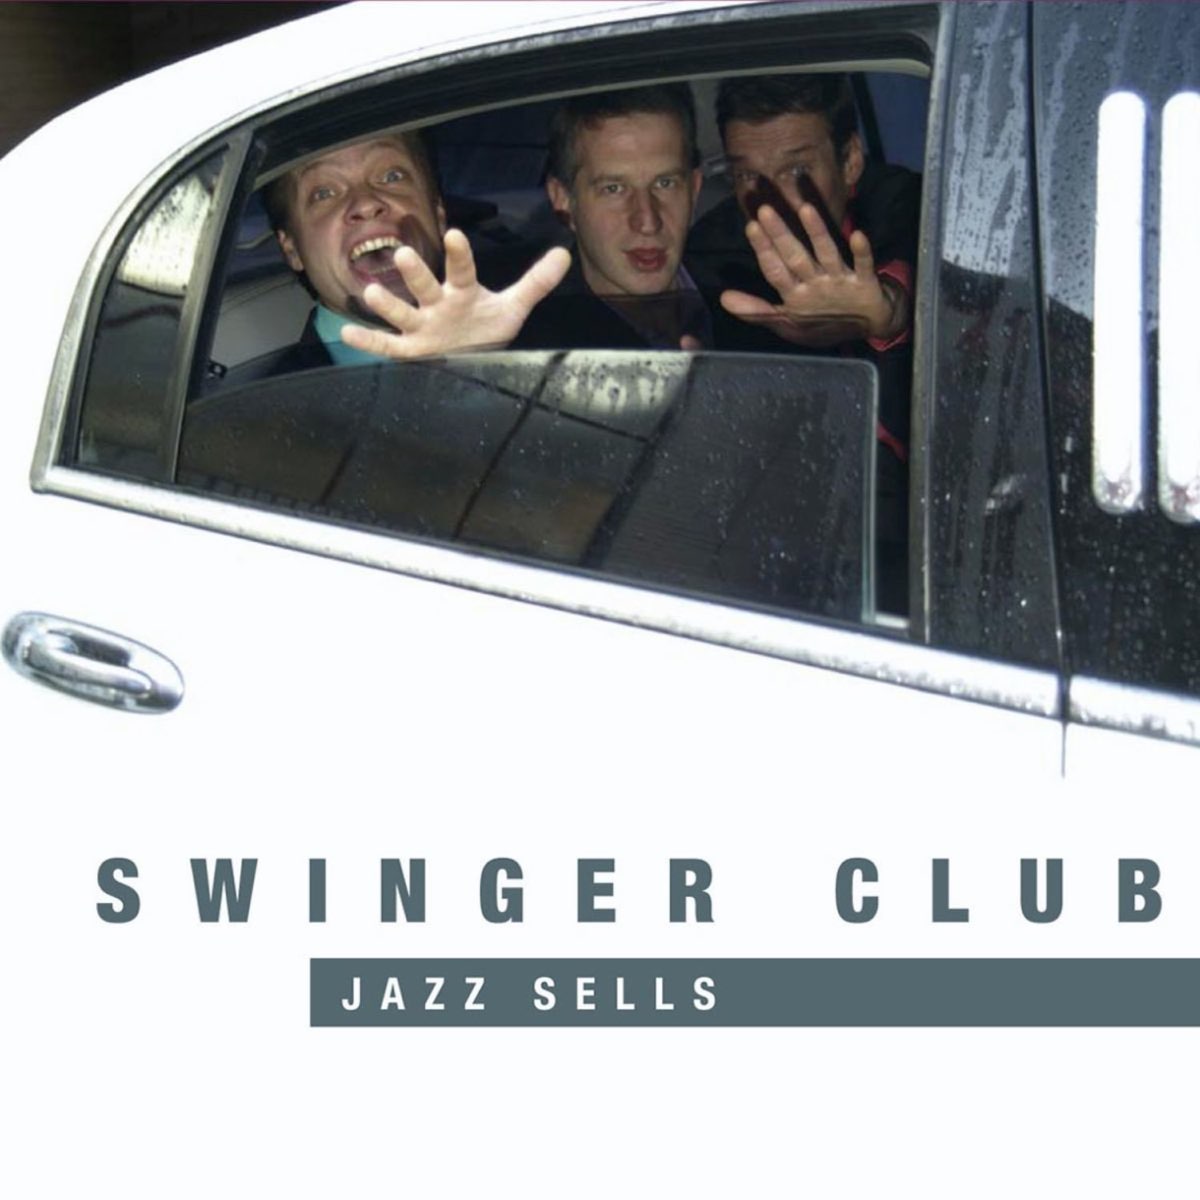 swinger club jazz sells Adult Pics Hq